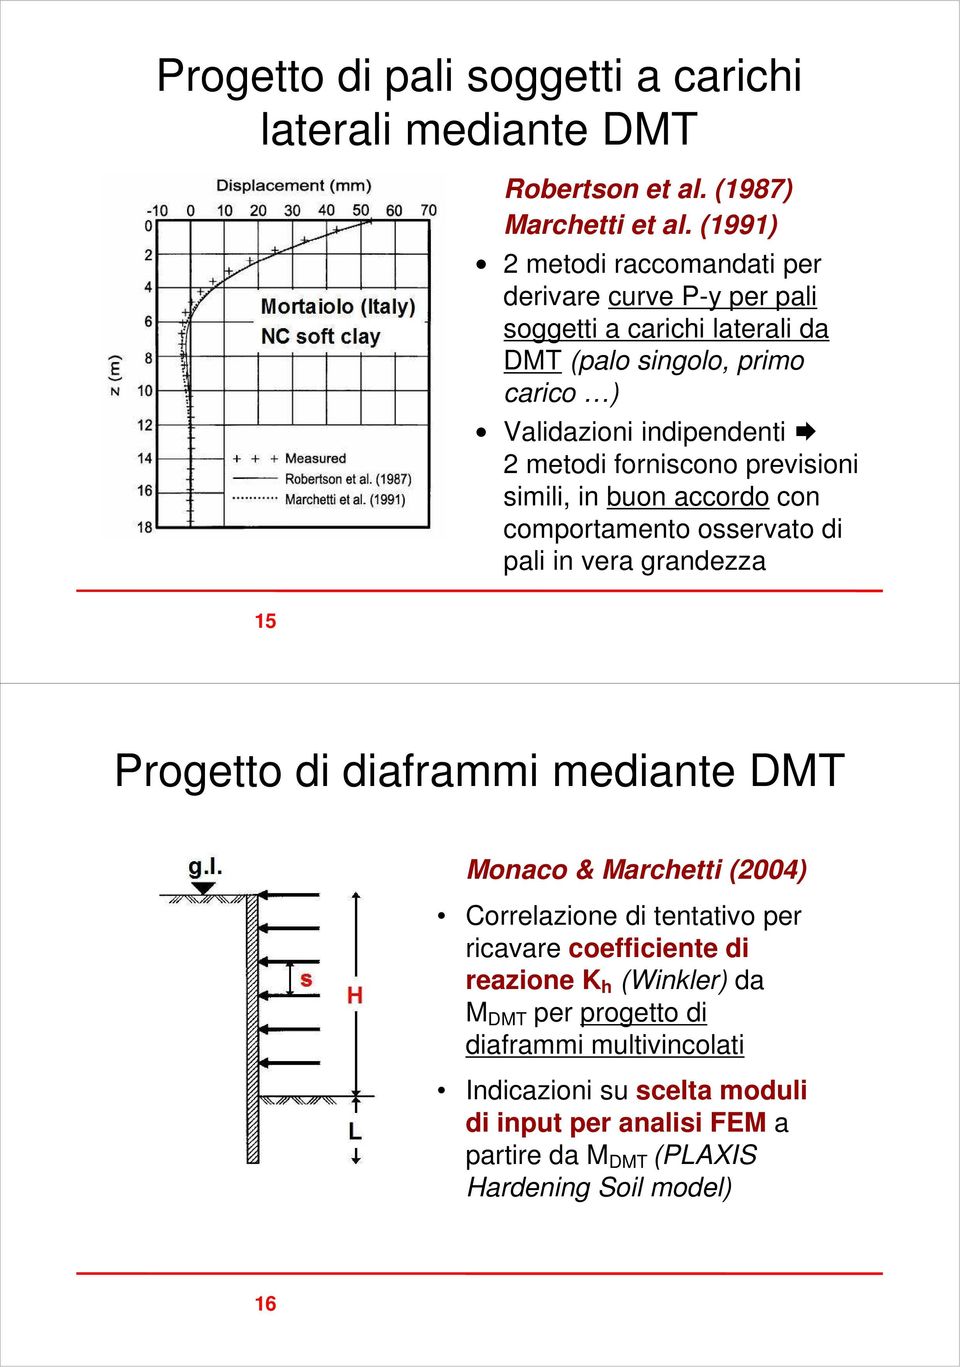 forniscono previsioni simili, in buon accordo con comportamento osservato di pali in vera grandezza Progetto di diaframmi mediante DMT Monaco & Marchetti (2004)